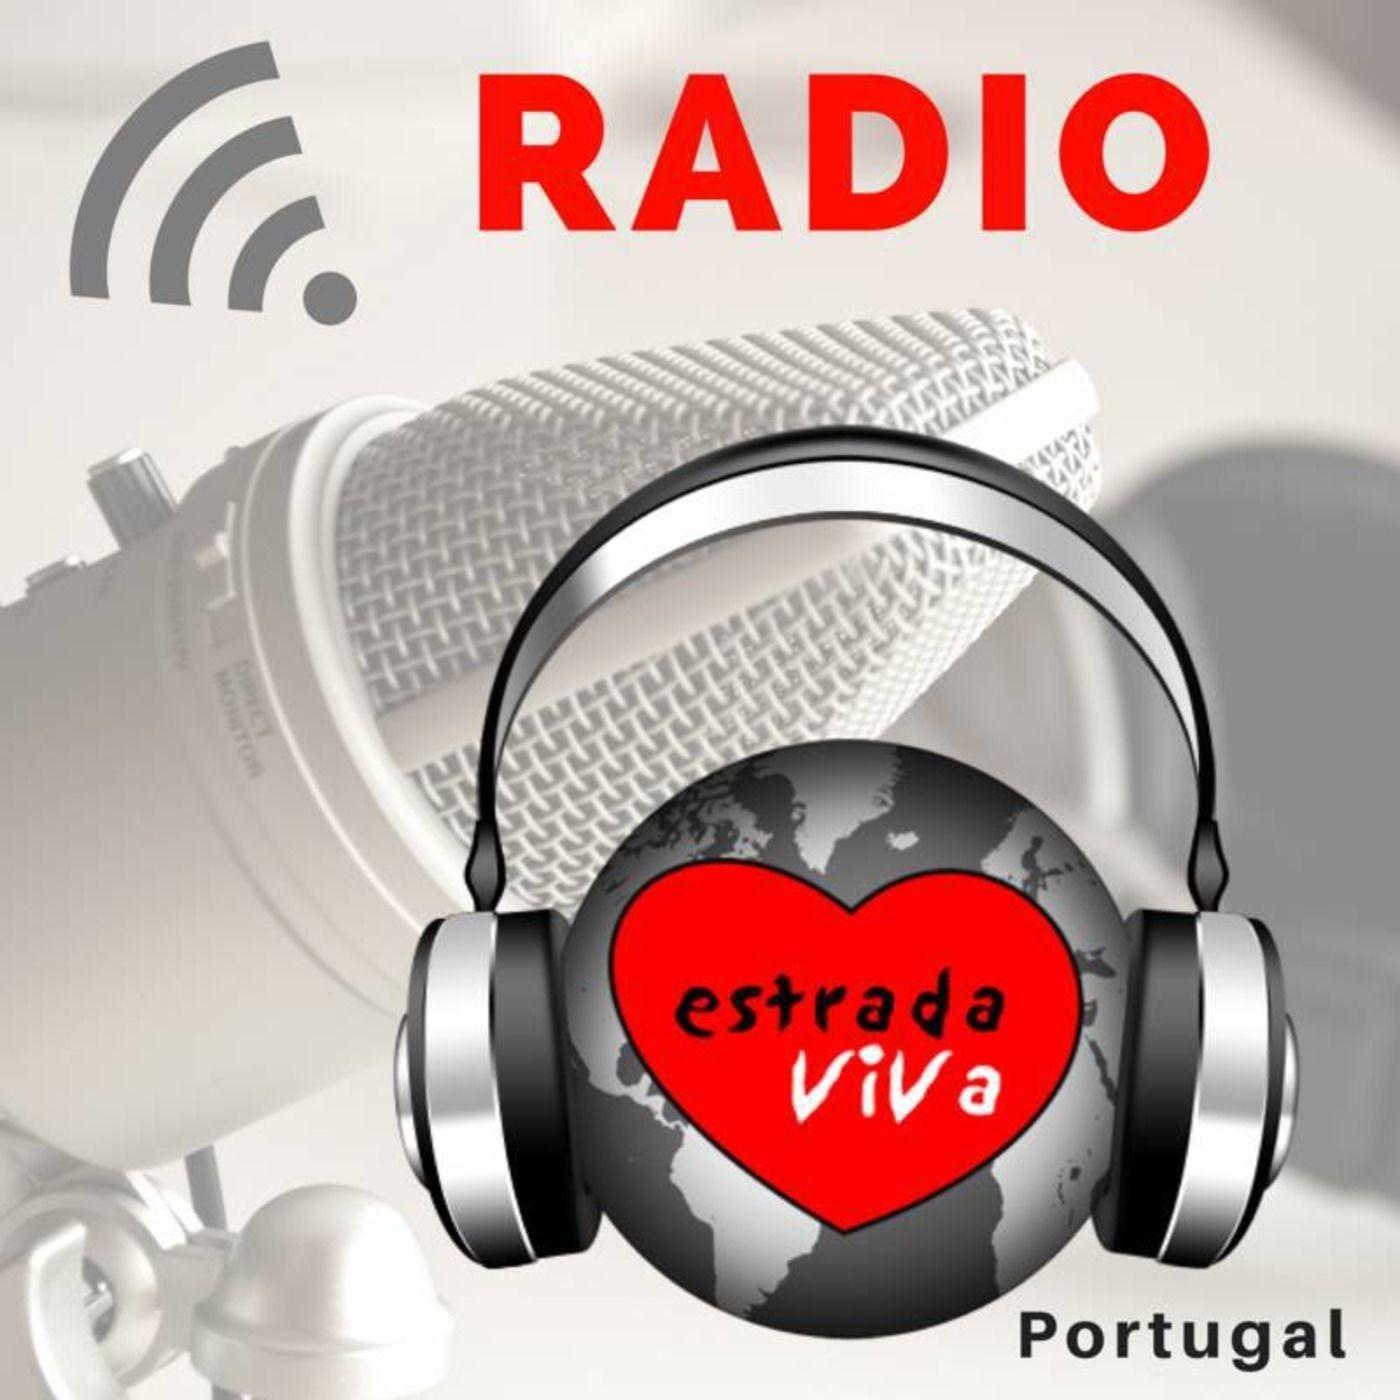 Radio Estrada Viva